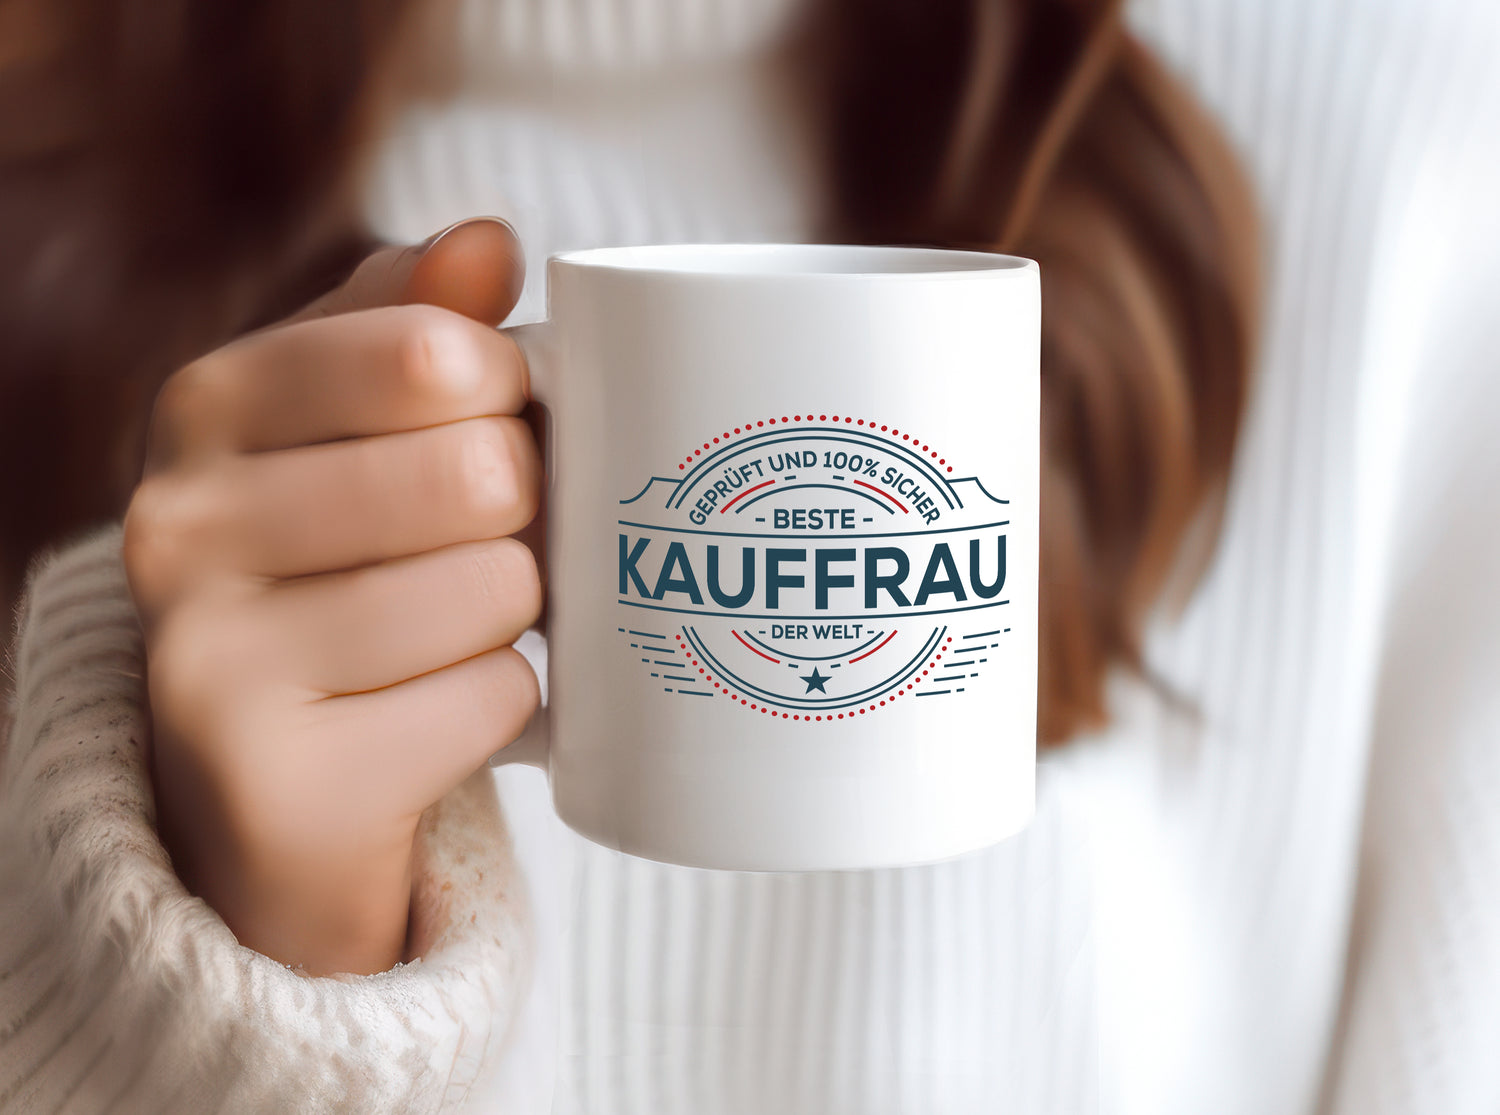 Geprüft und sicher: Kauffrau | Kauffrauen - Tasse Weiß - Kaffeetasse / Geschenk / Familie